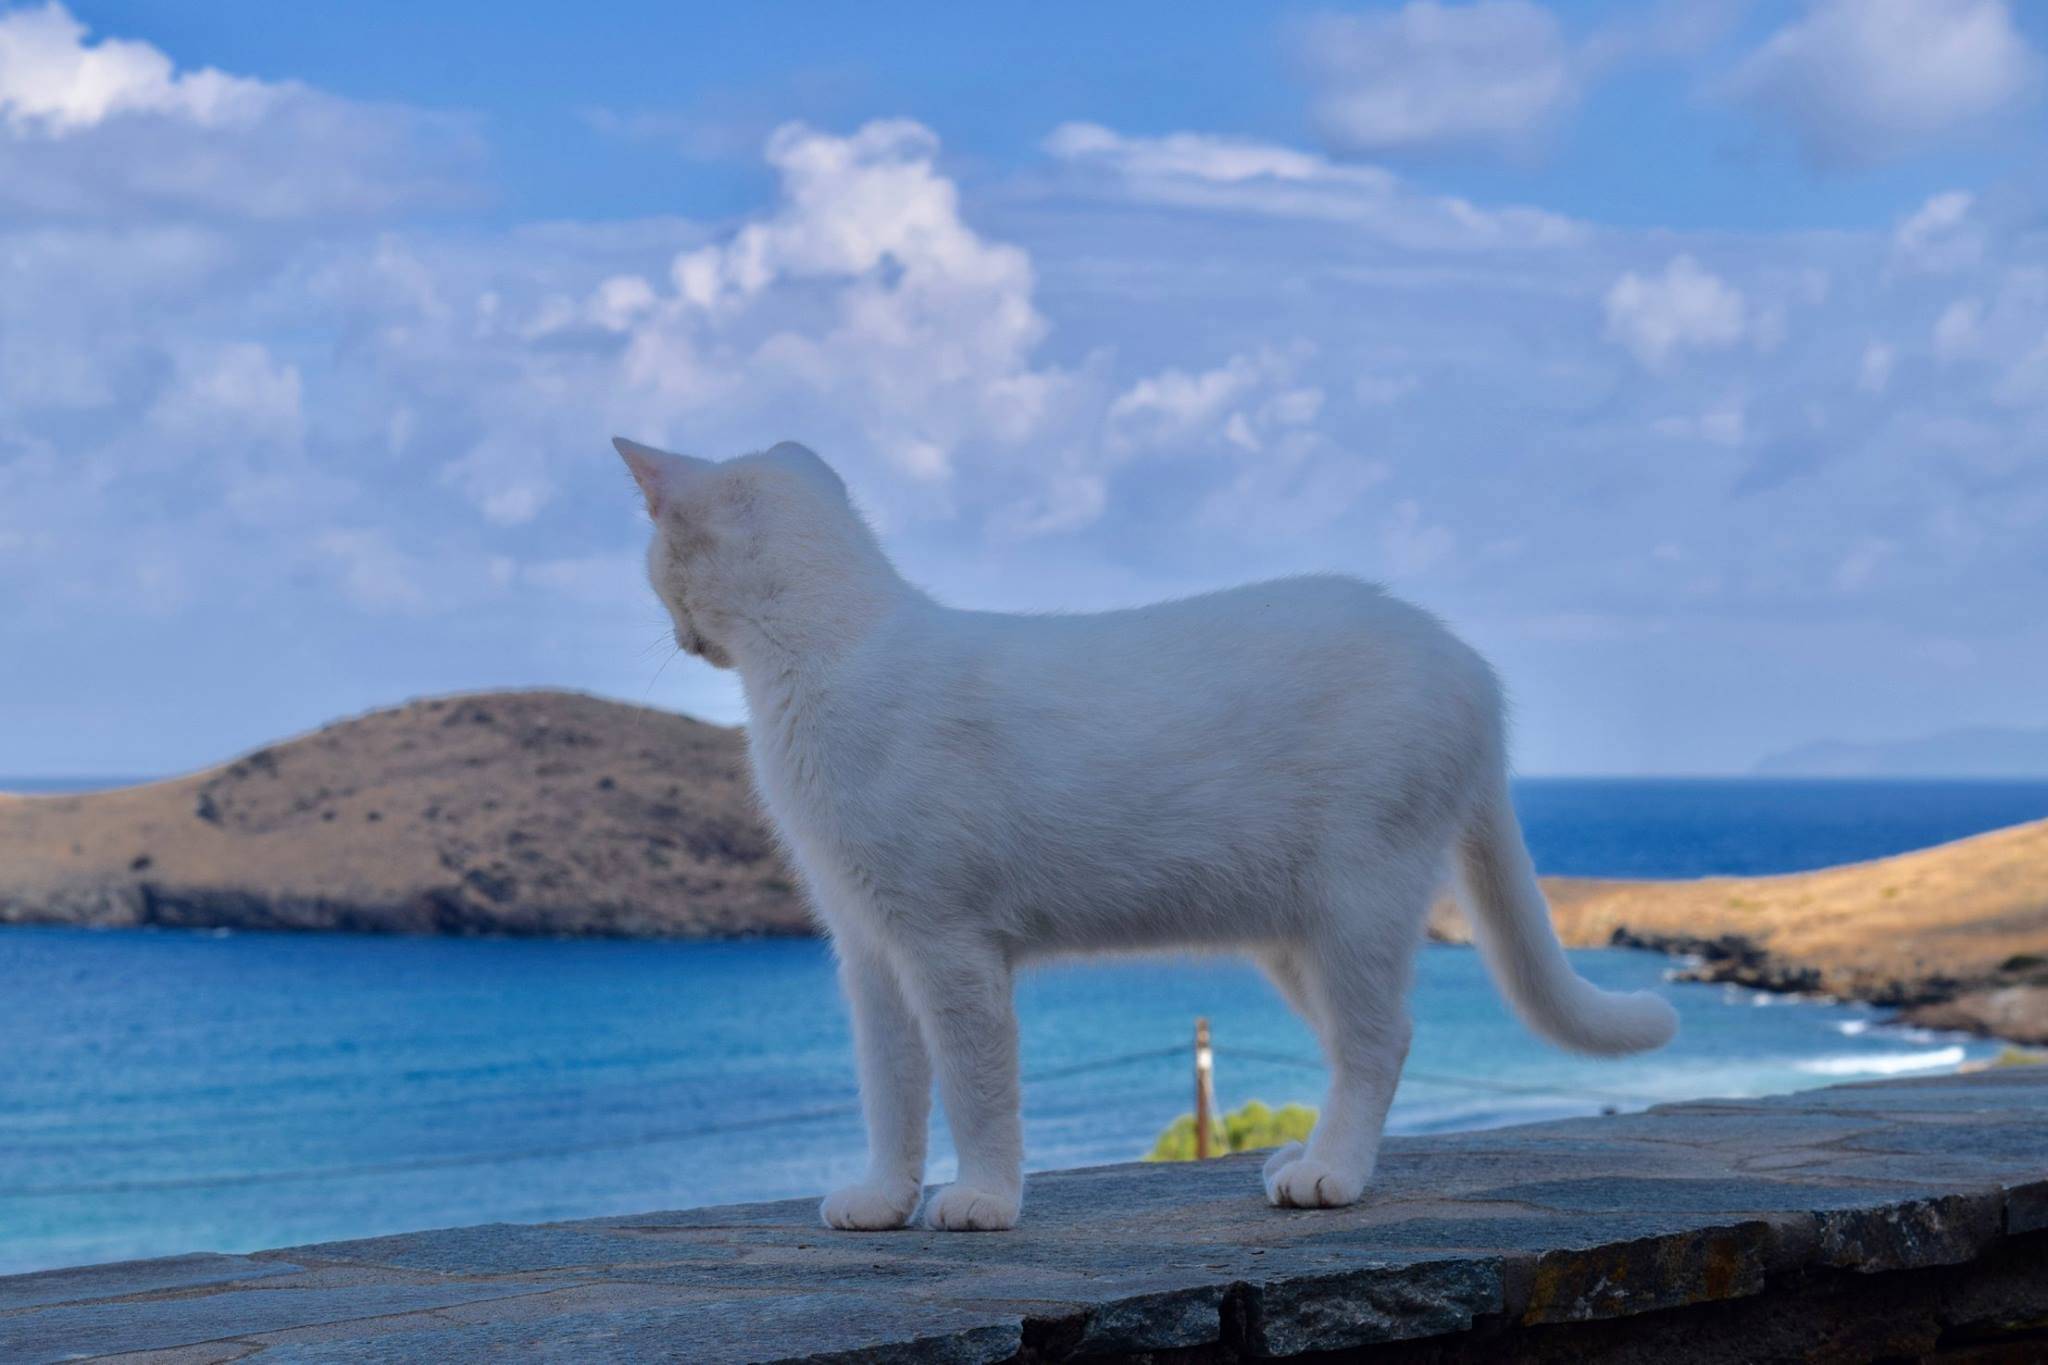 Приют для кошек на потрясающем греческом острове: работа смотрителя мечты  -  история  2022